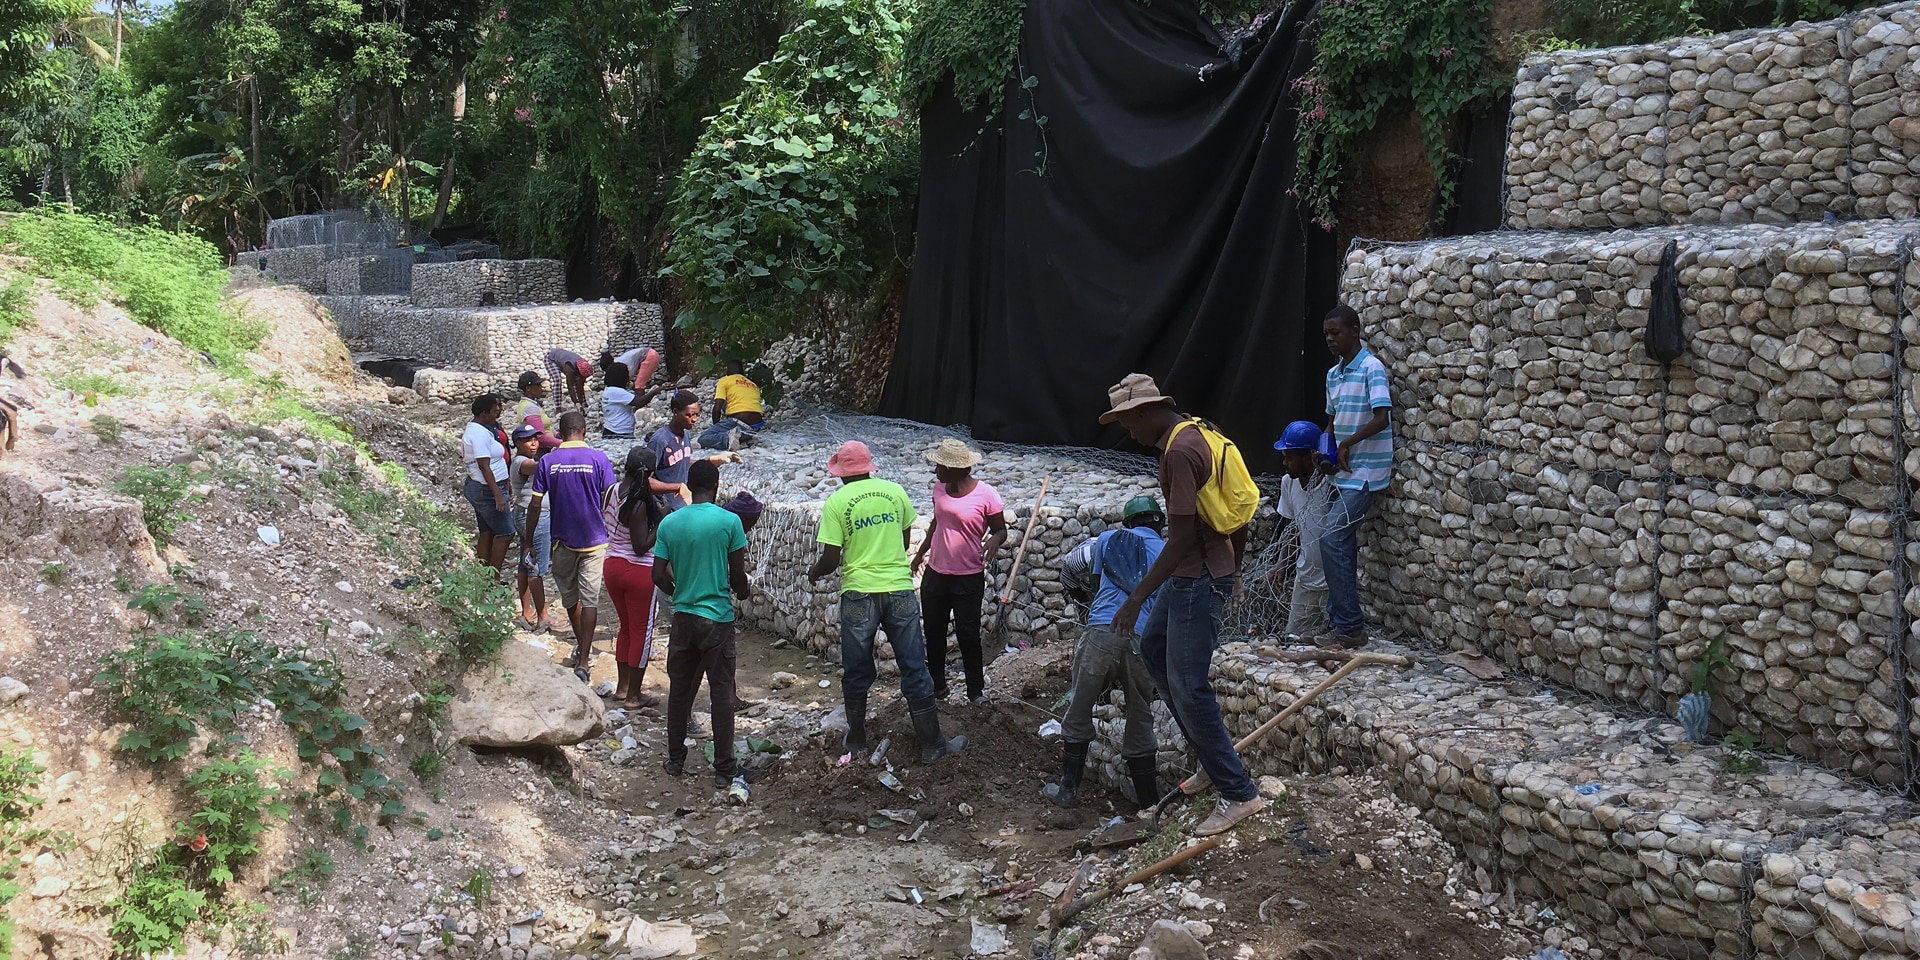 Un gruppo di persone lavora alla costruzione di strutture in pietra lungo una via, che formano alti argini per incanalare l’acqua.